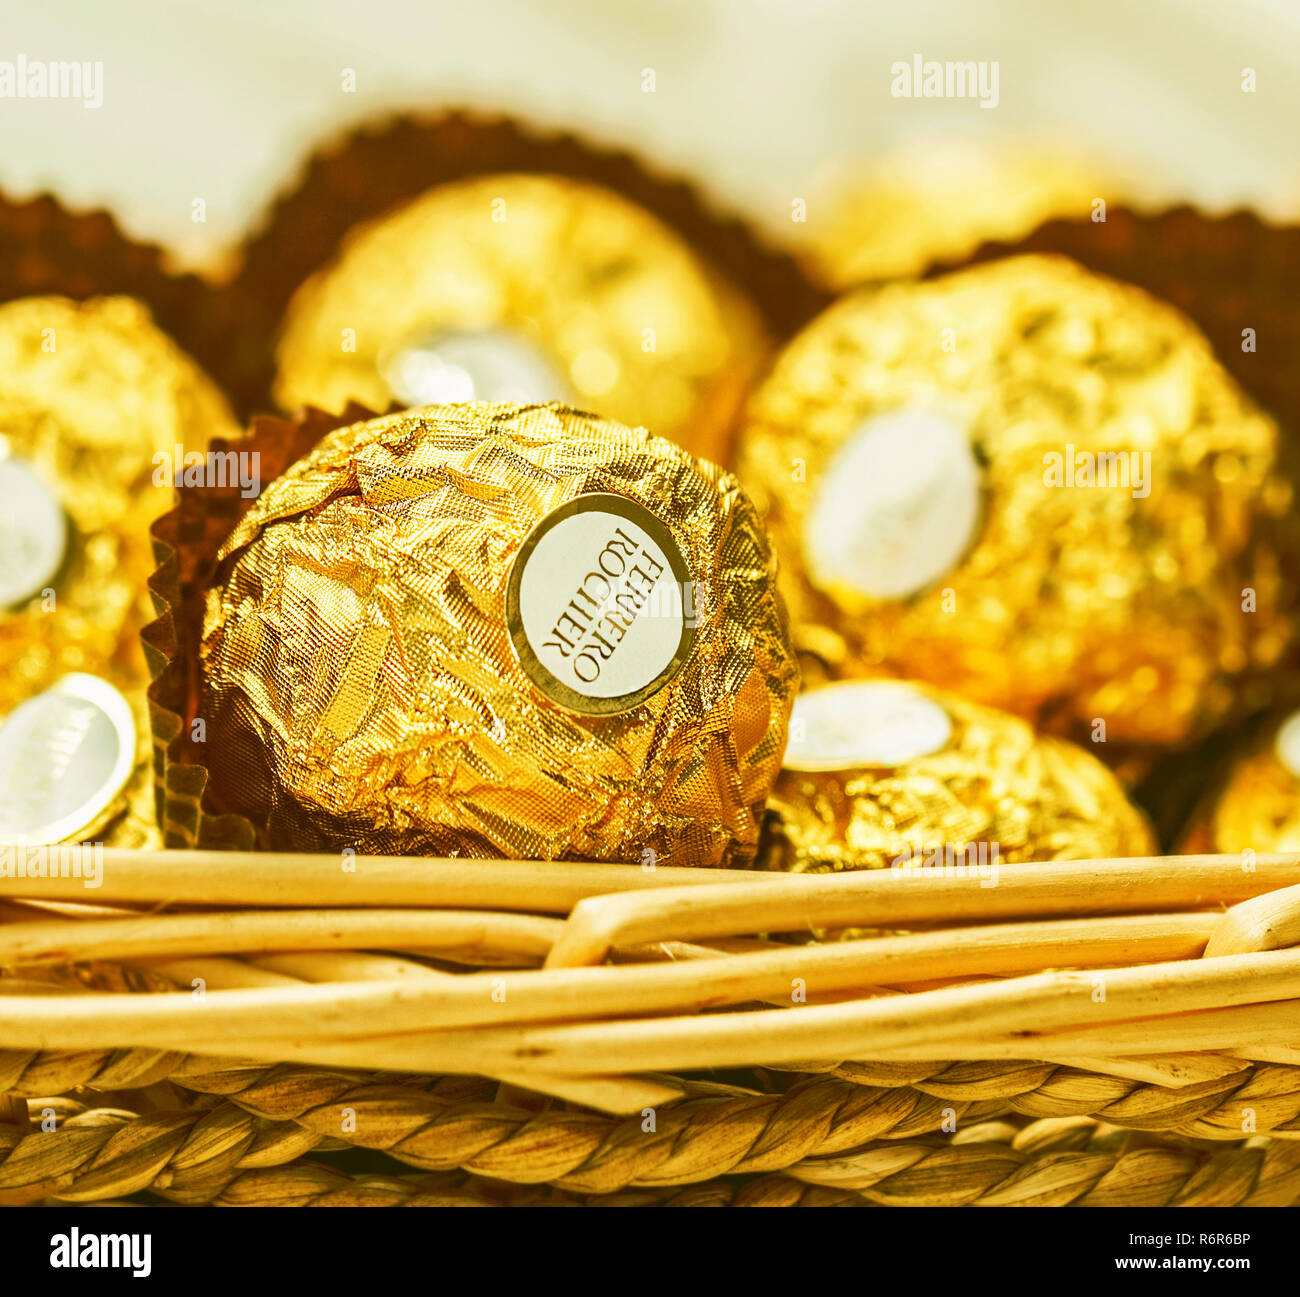 https://c8.alamy.com/compfr/r6r6bp/chocolats-ferrero-rocher-close-up-pour-celebrer-la-fete-de-noel-et-r6r6bp.jpg